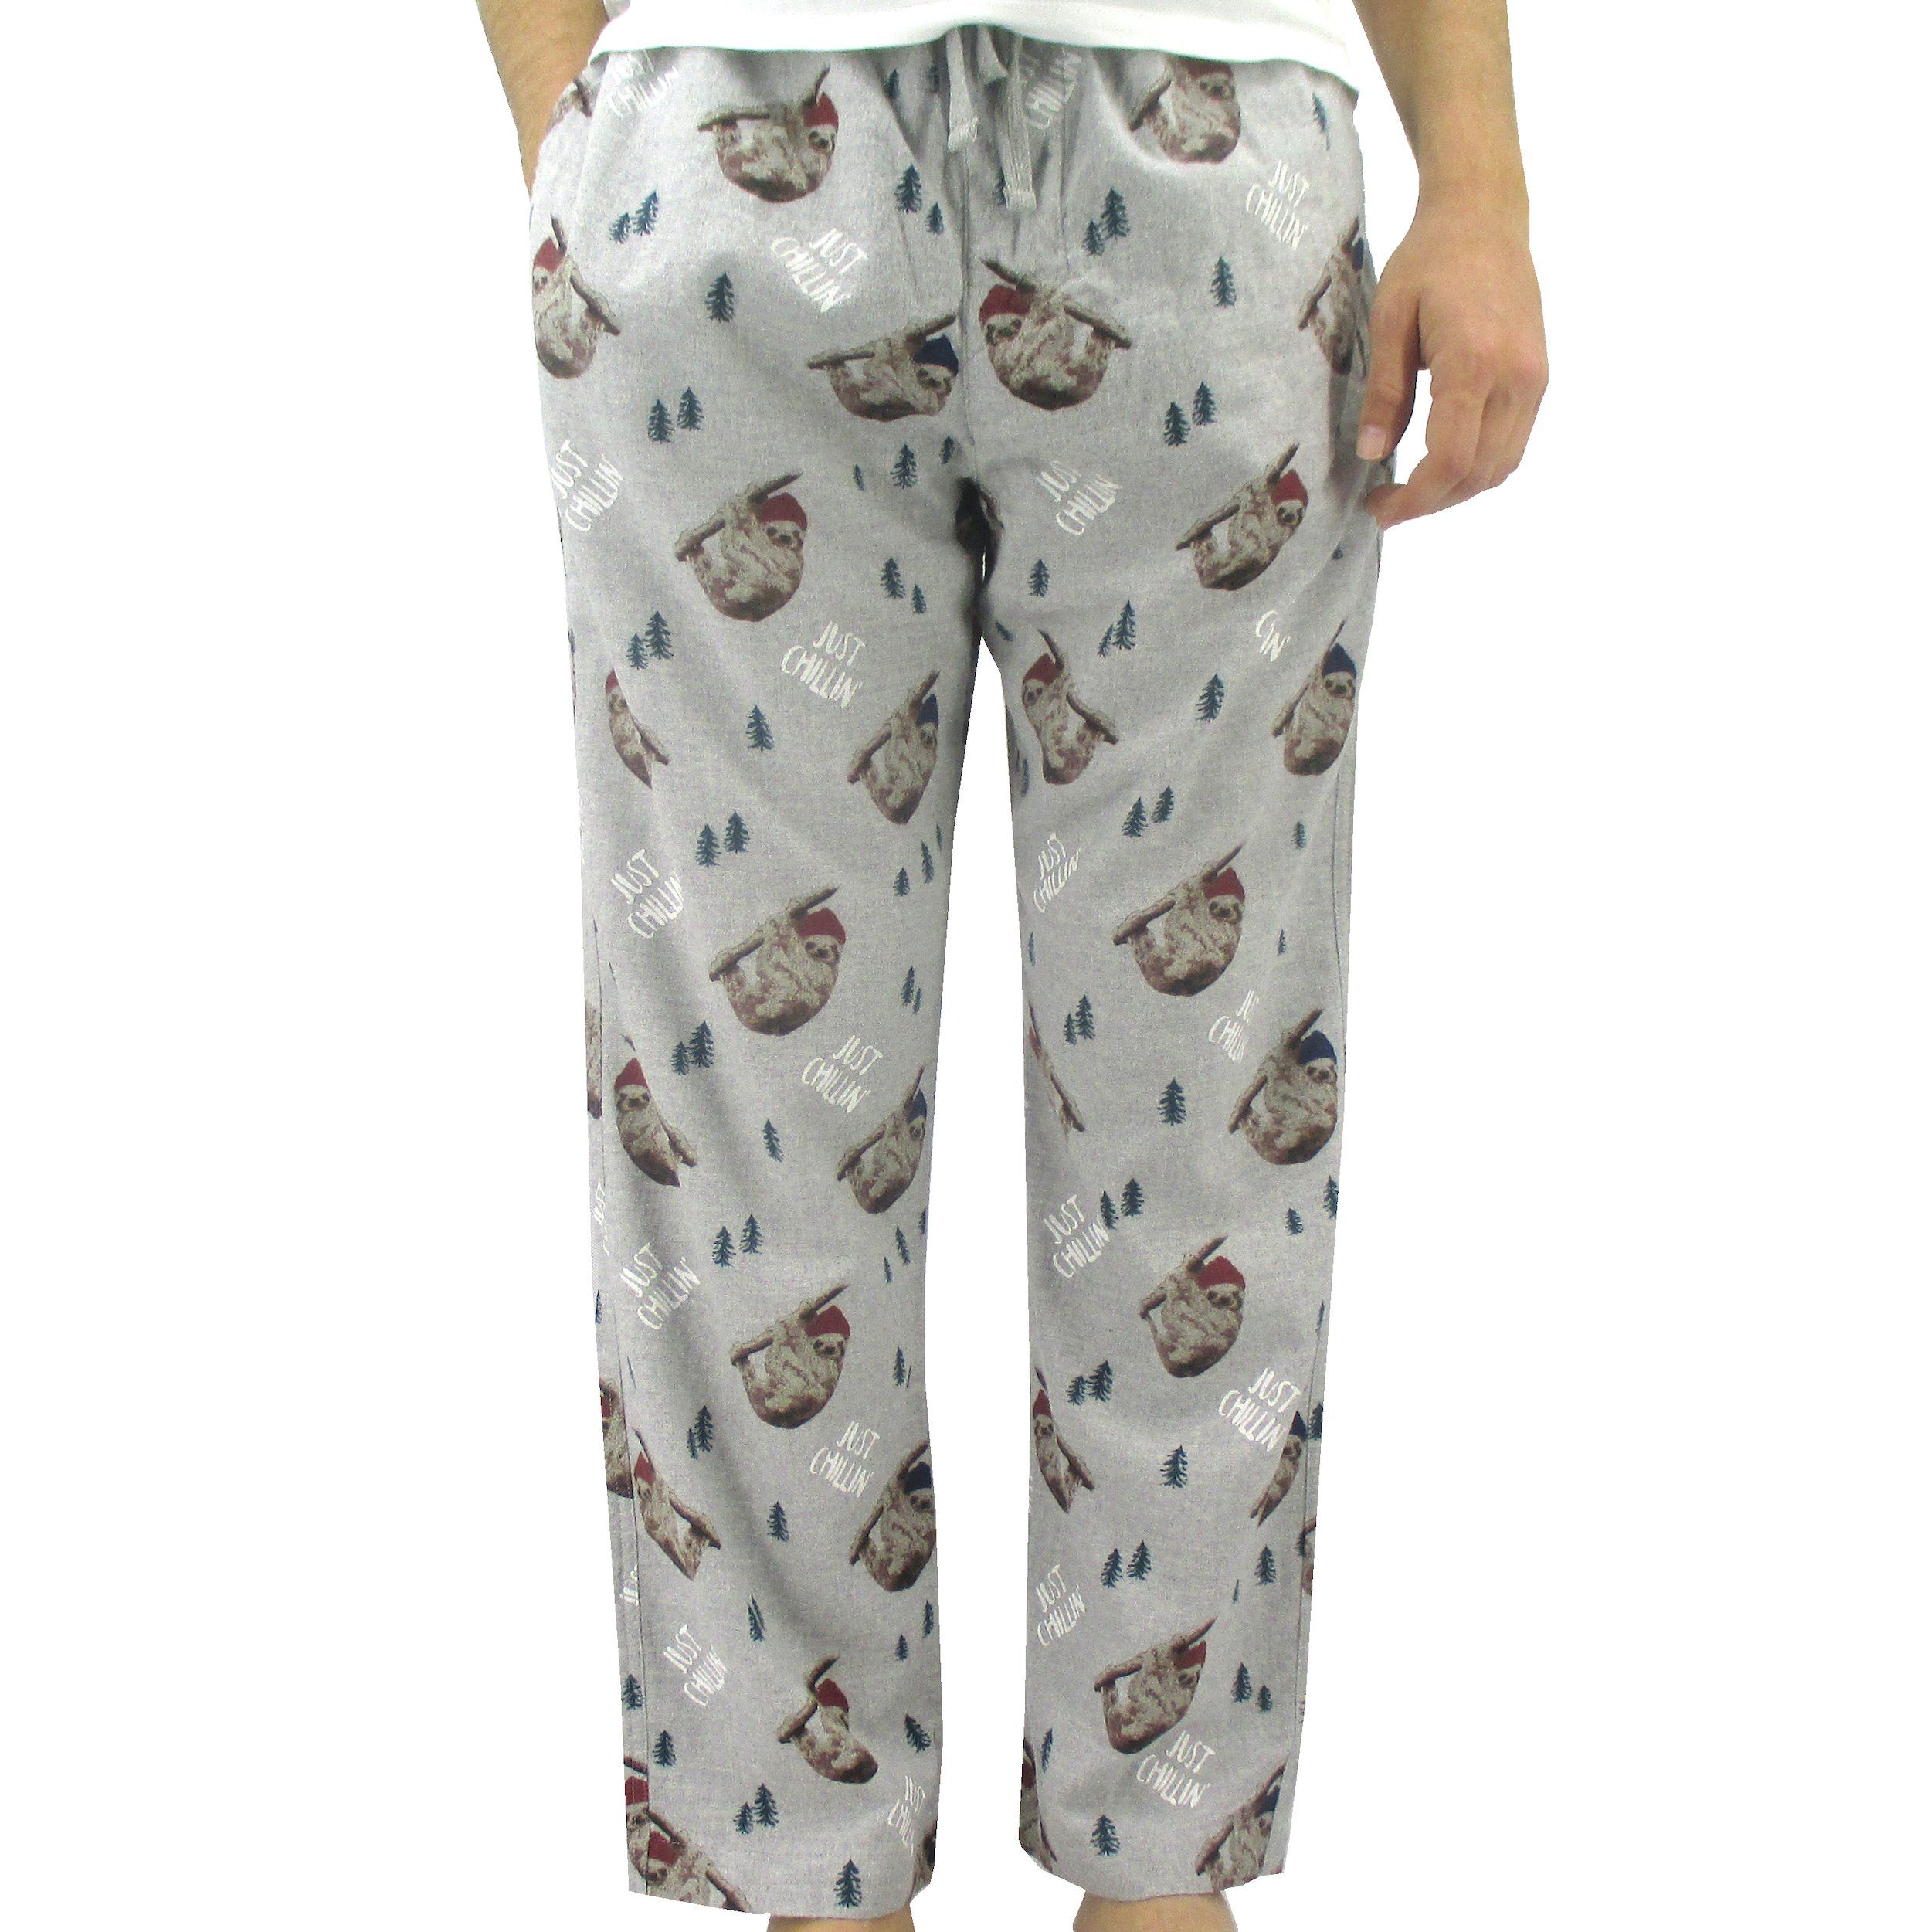 Men's Pajamas and Sleepwear - LazyOne